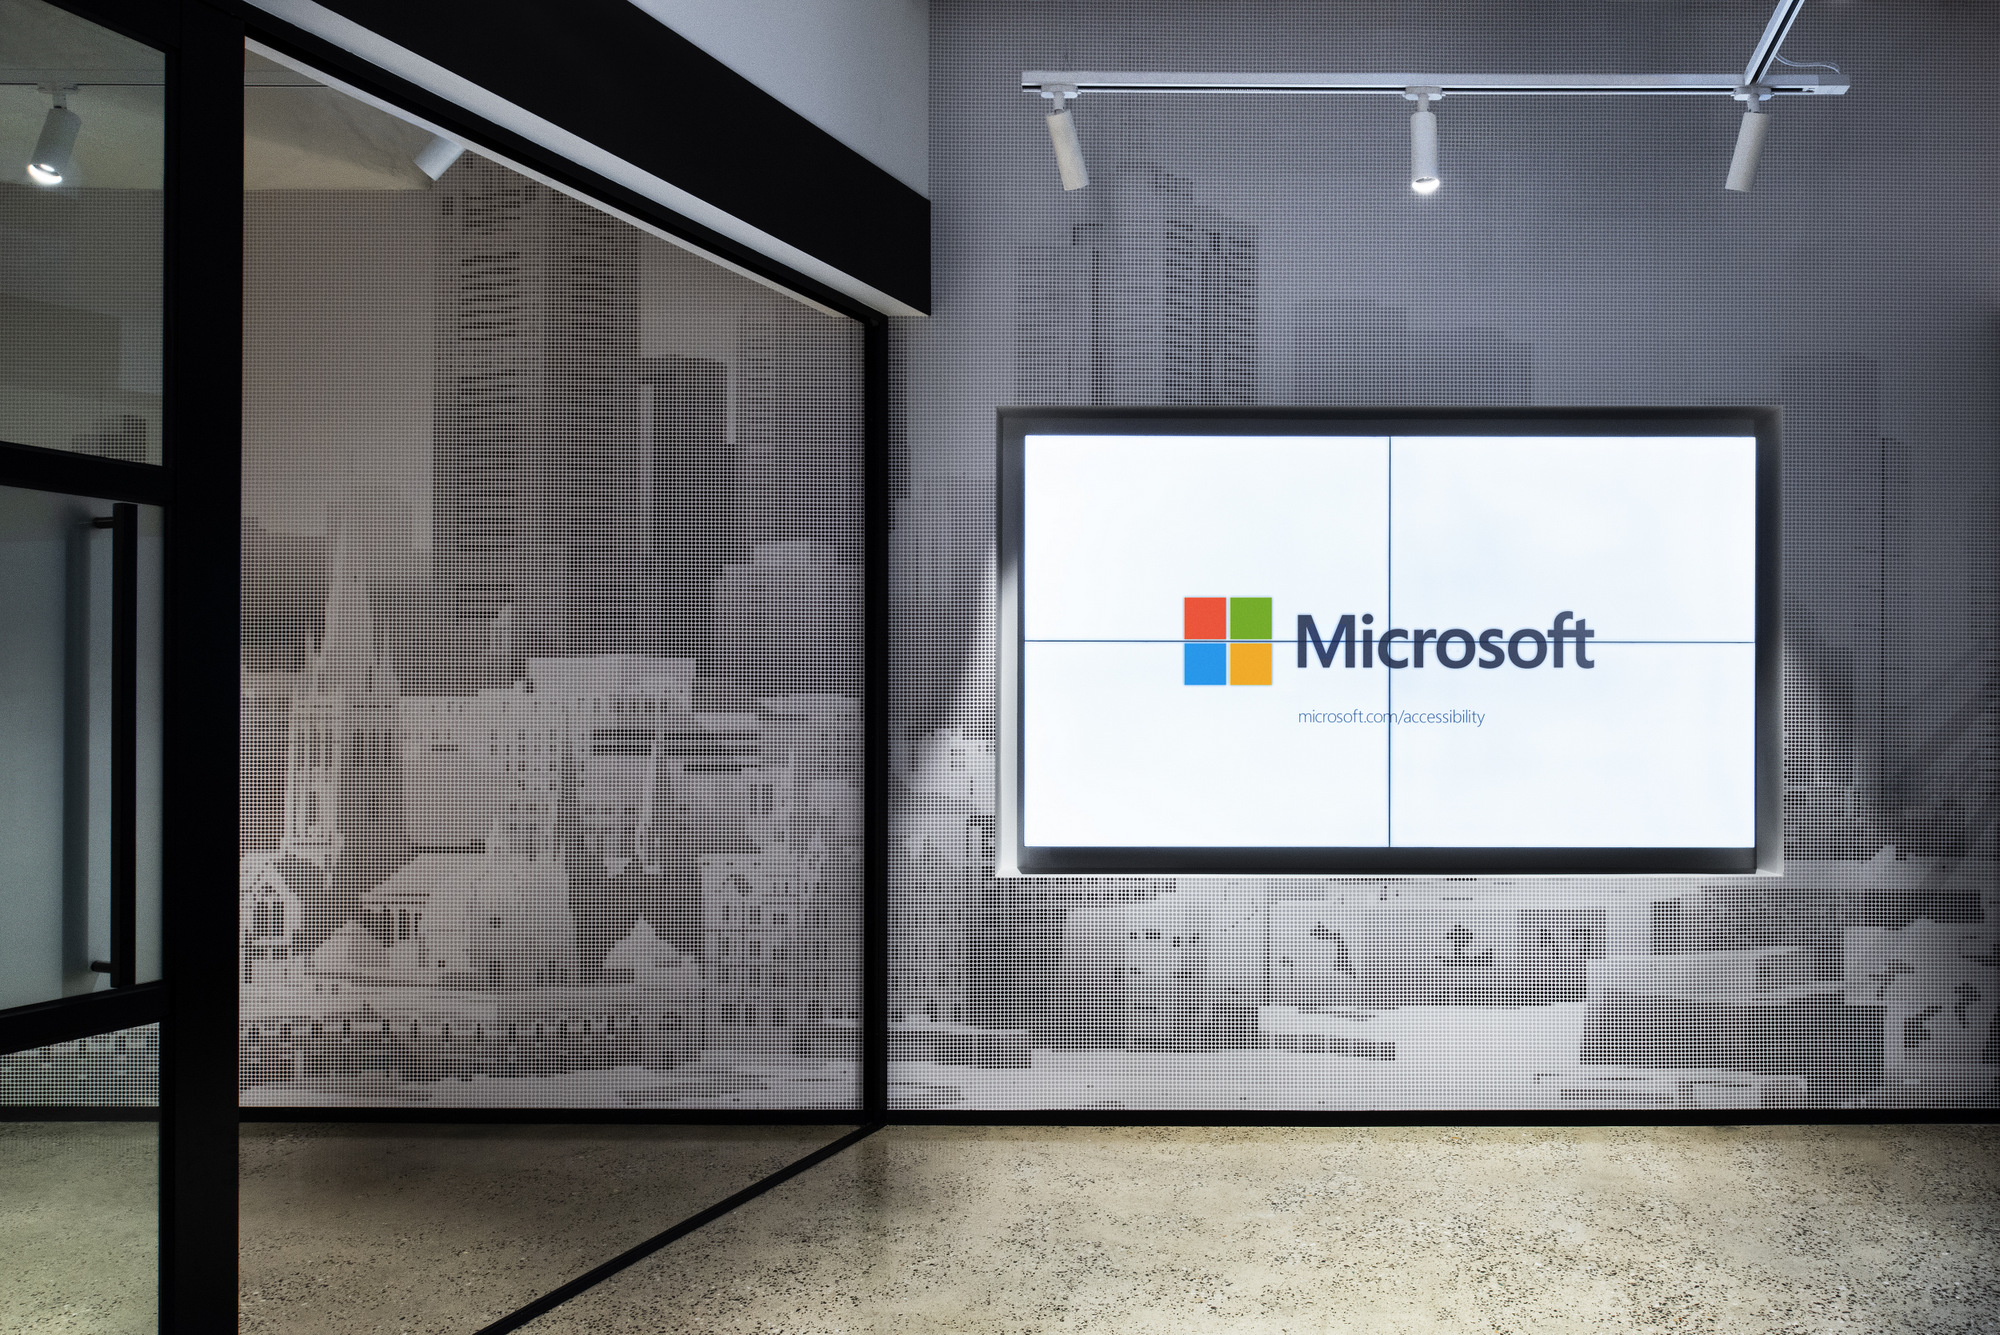 Microsoft(マイクロソフト)のオフィス - メルボルン, オーストラリアの廊下